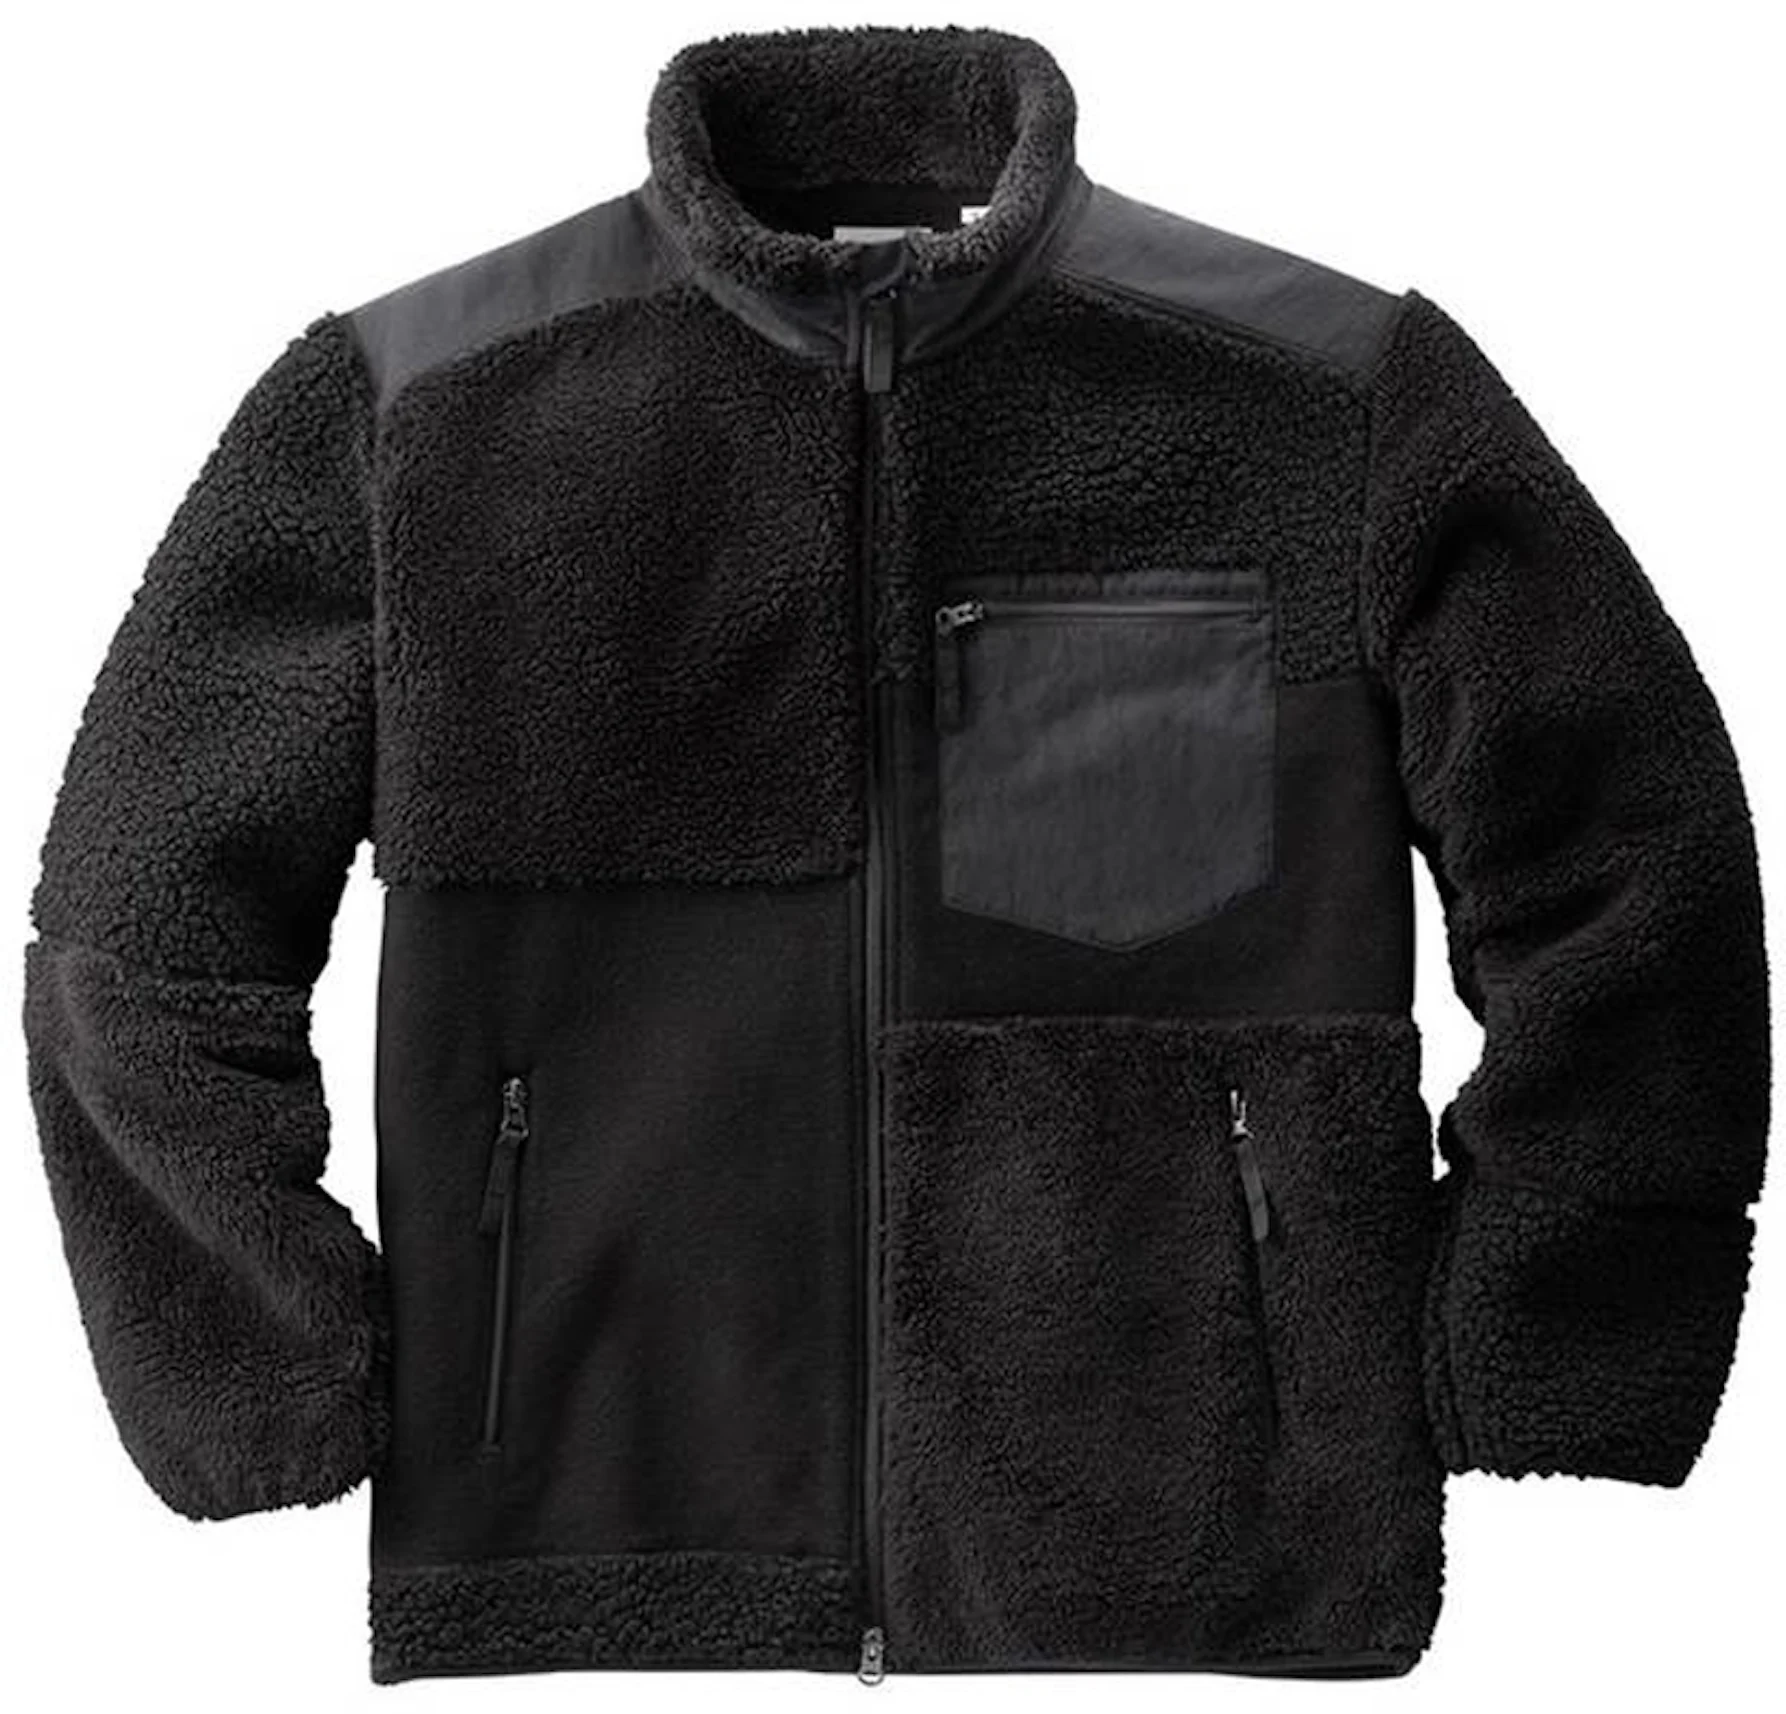 Uniqlo x Engineered Garments Fleece Combination Jacket (US Sizing